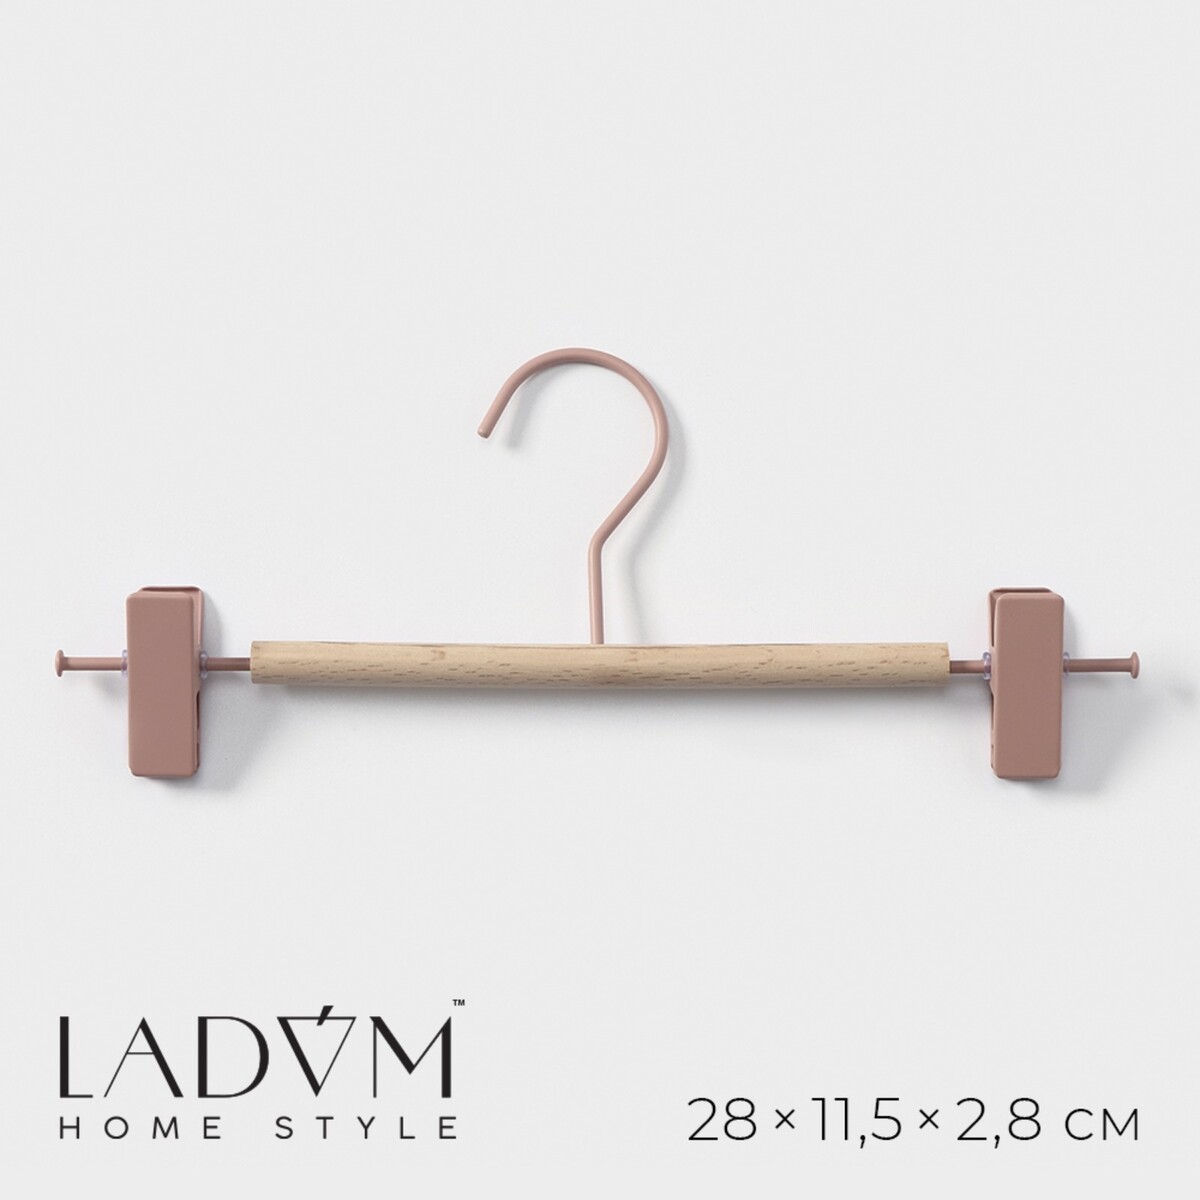 Вешалка для брюк и юбок с зажимами ladо́m laconique, 28×11,5×2,8 см, цвет розовый bradex вешалка для брюк 5 в1 гинго